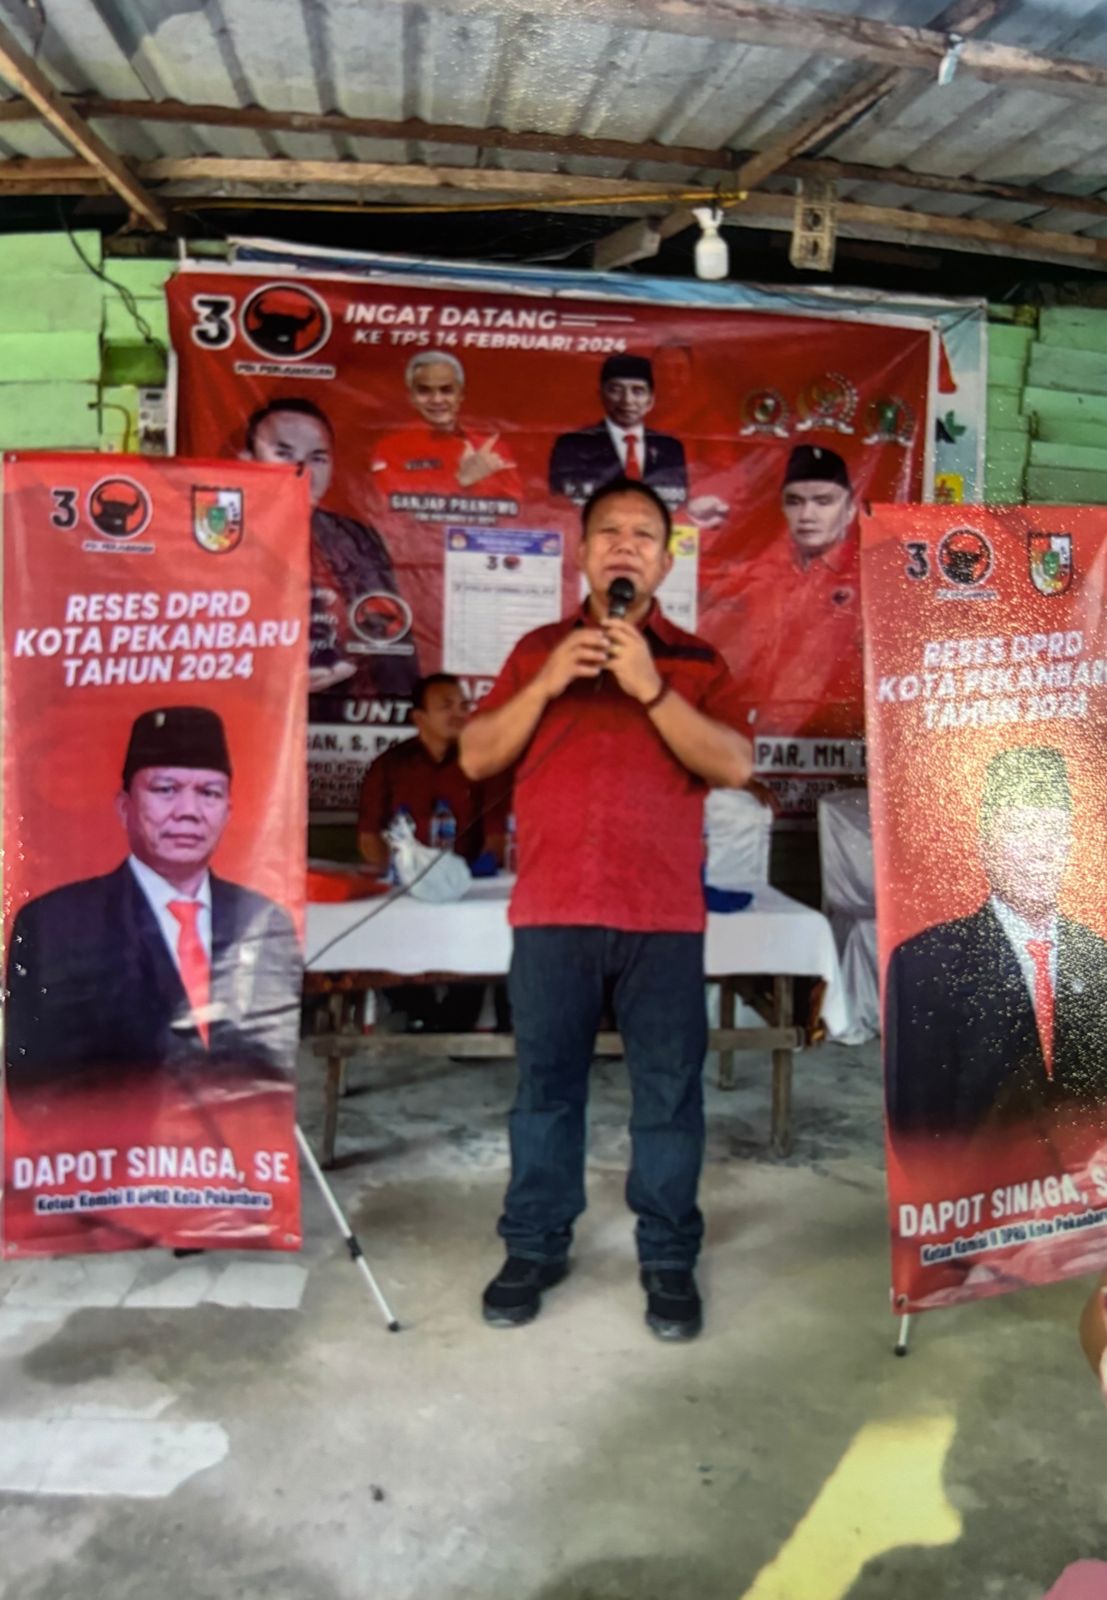 Anggota DPRD kota Pekanbaru Dapot Sinaga saat melaksanakan reses